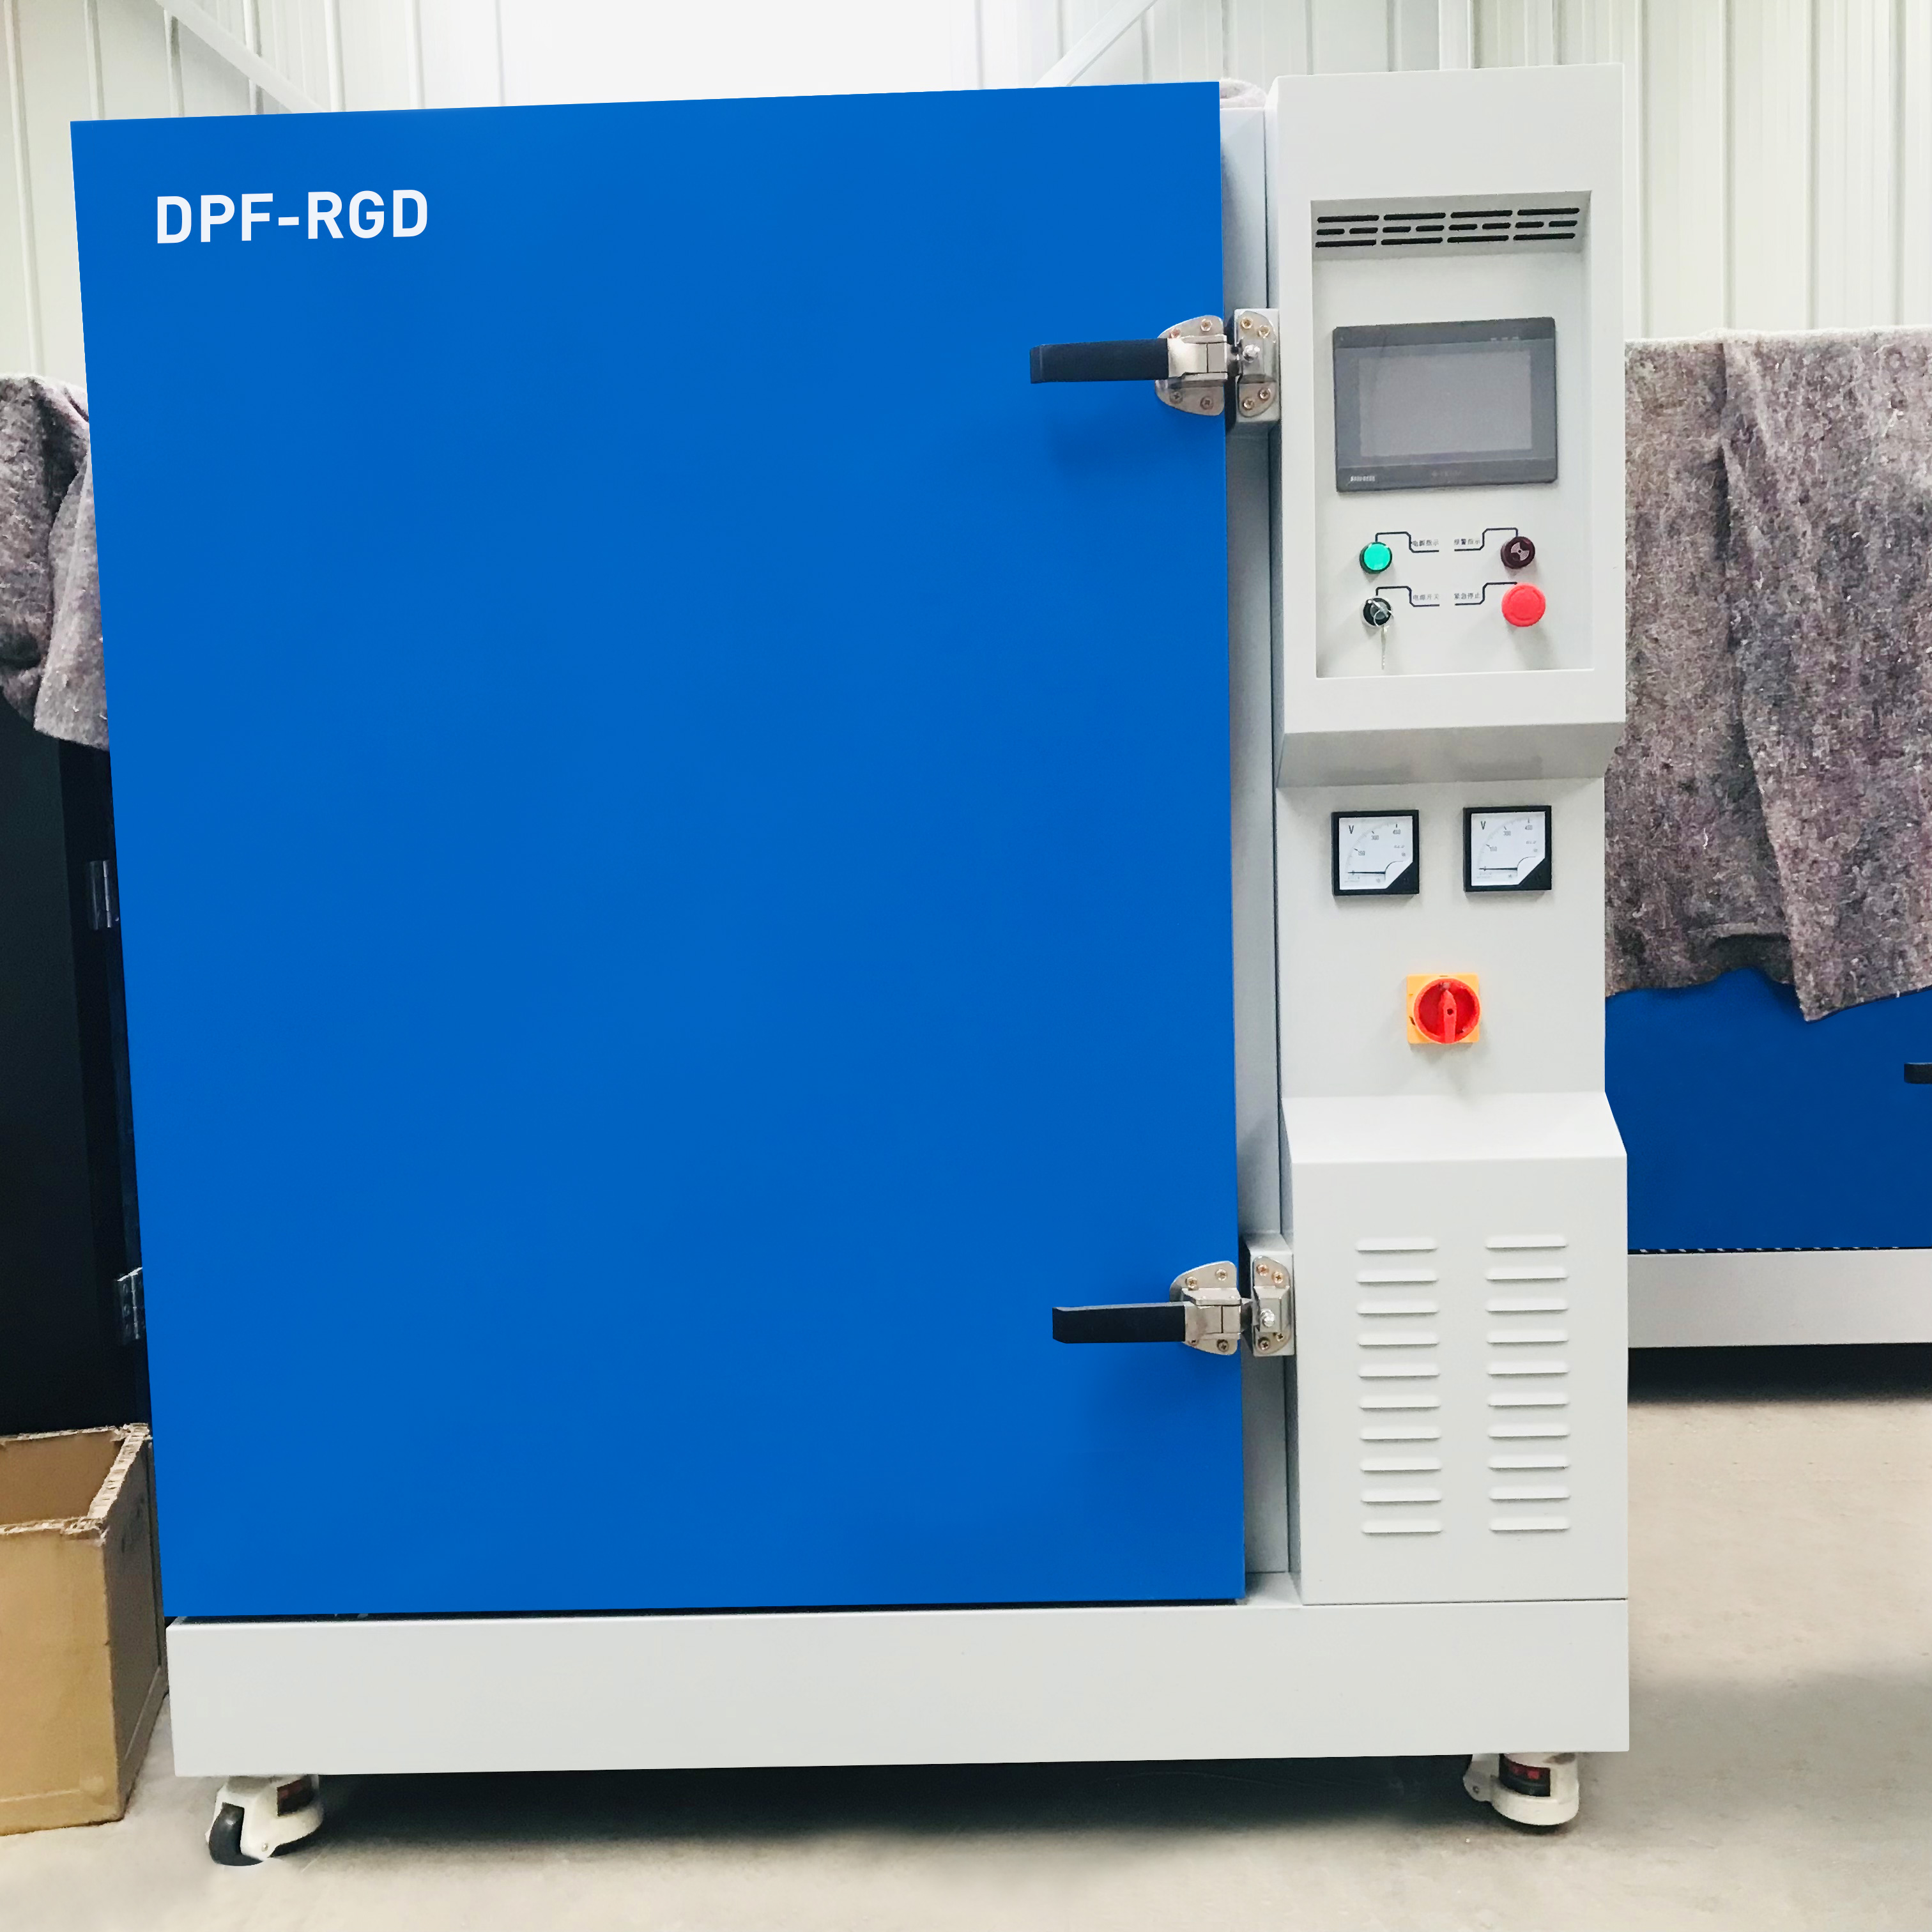 Dispositivo inteligente de regeneración de alta temperatura de reprocesamiento DPF - RGD